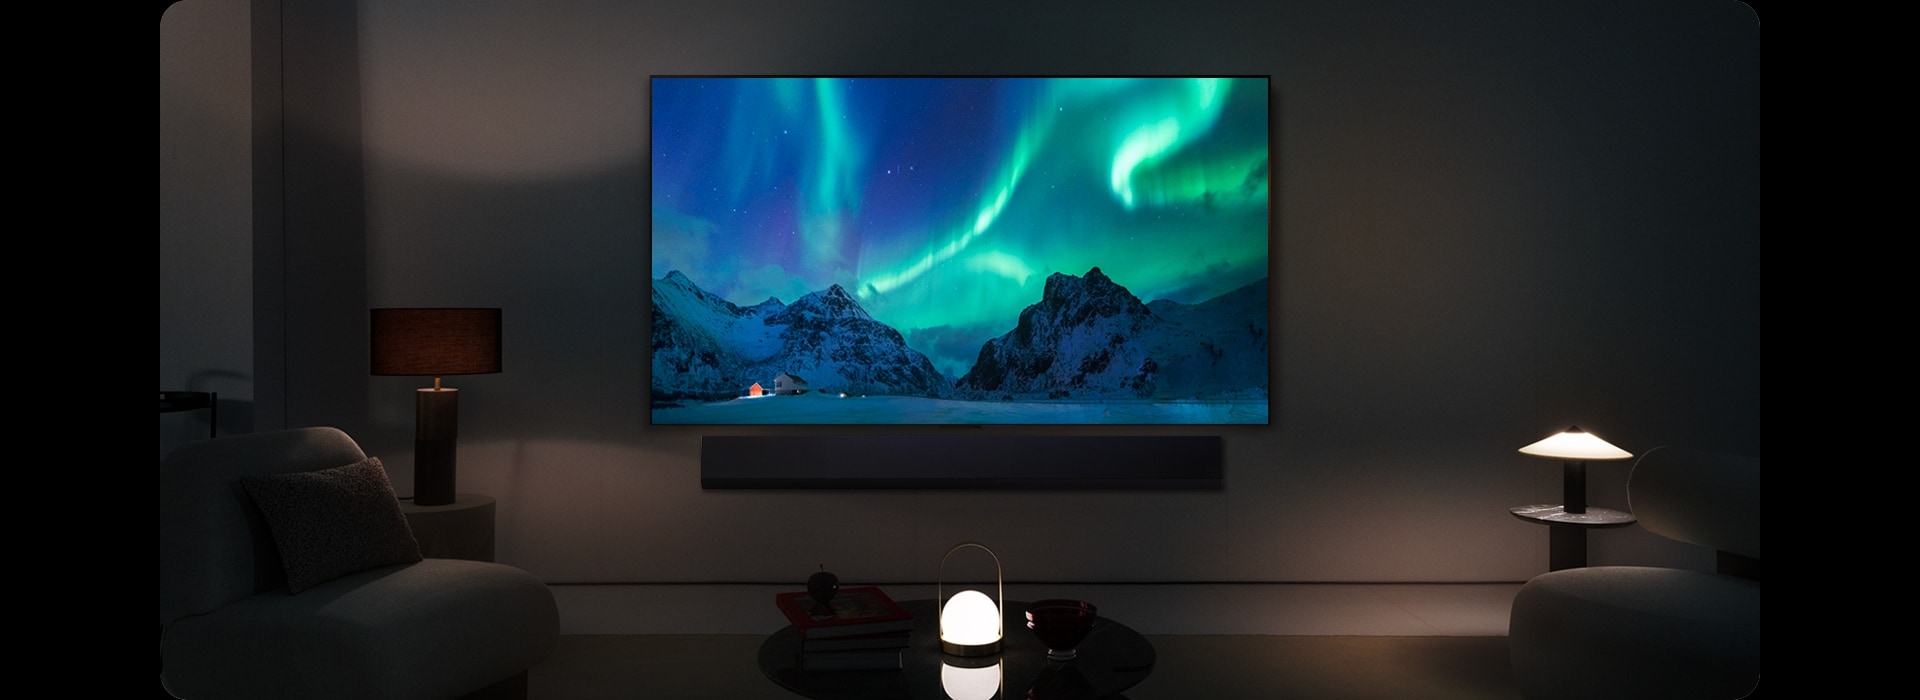 LG OLED TV y LG Soundbar en un espacio moderno durante la noche. La imagen en pantalla de la aurora boreal se muestra con los niveles de brillo ideales.